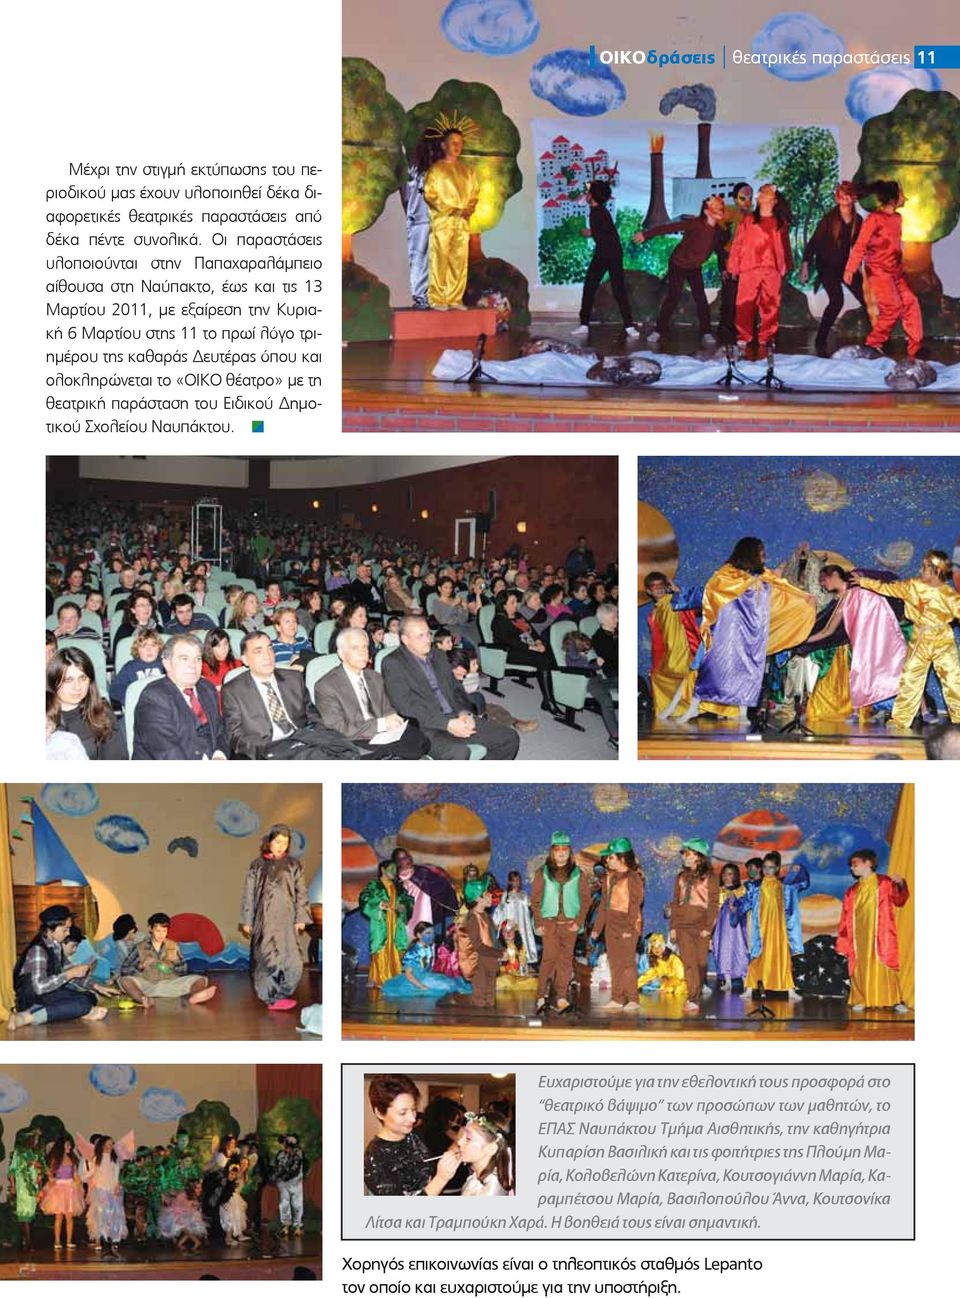 ολοκληρώνεται το «ΟΙΚΟ θέατρο» με τη θεατρική παράσταση του Ειδικού ημοτικού Σχολείου Ναυπάκτου.